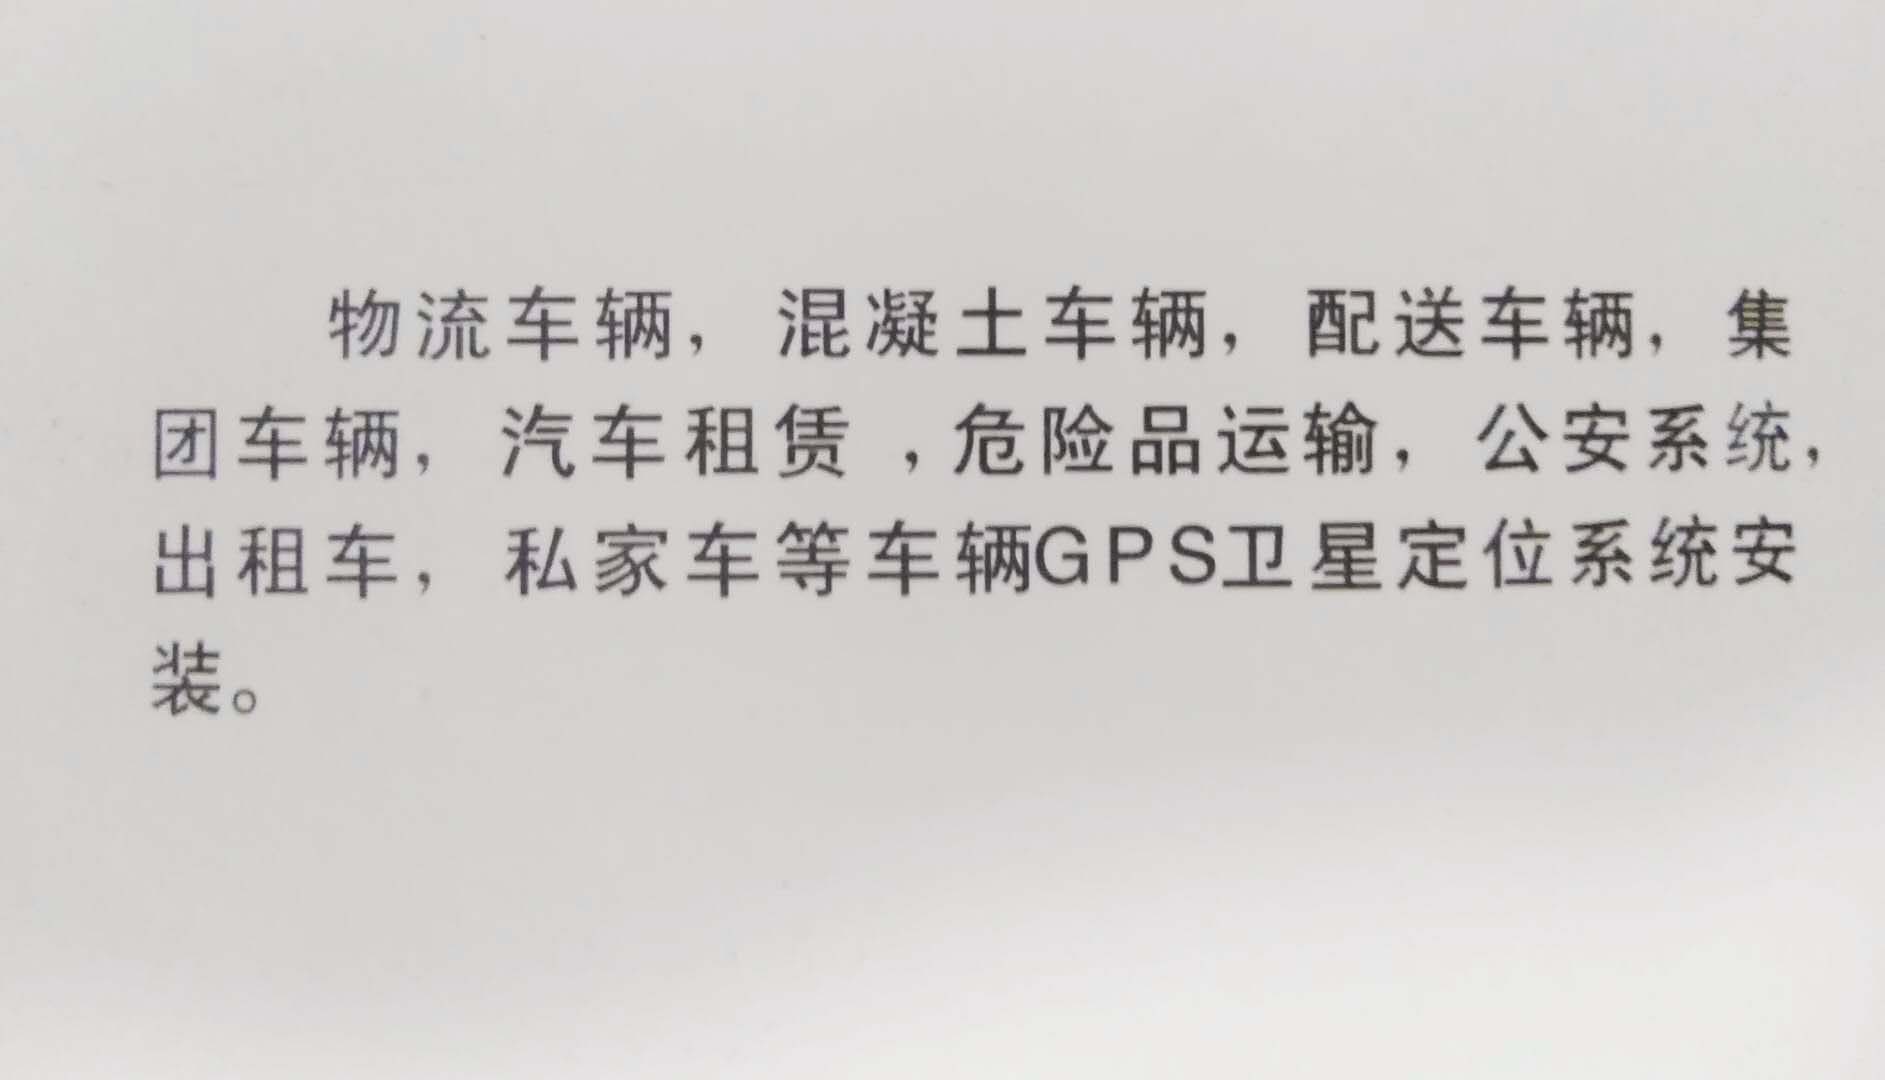 天津集团企业单位业务车辆gps北斗卫星定位系统